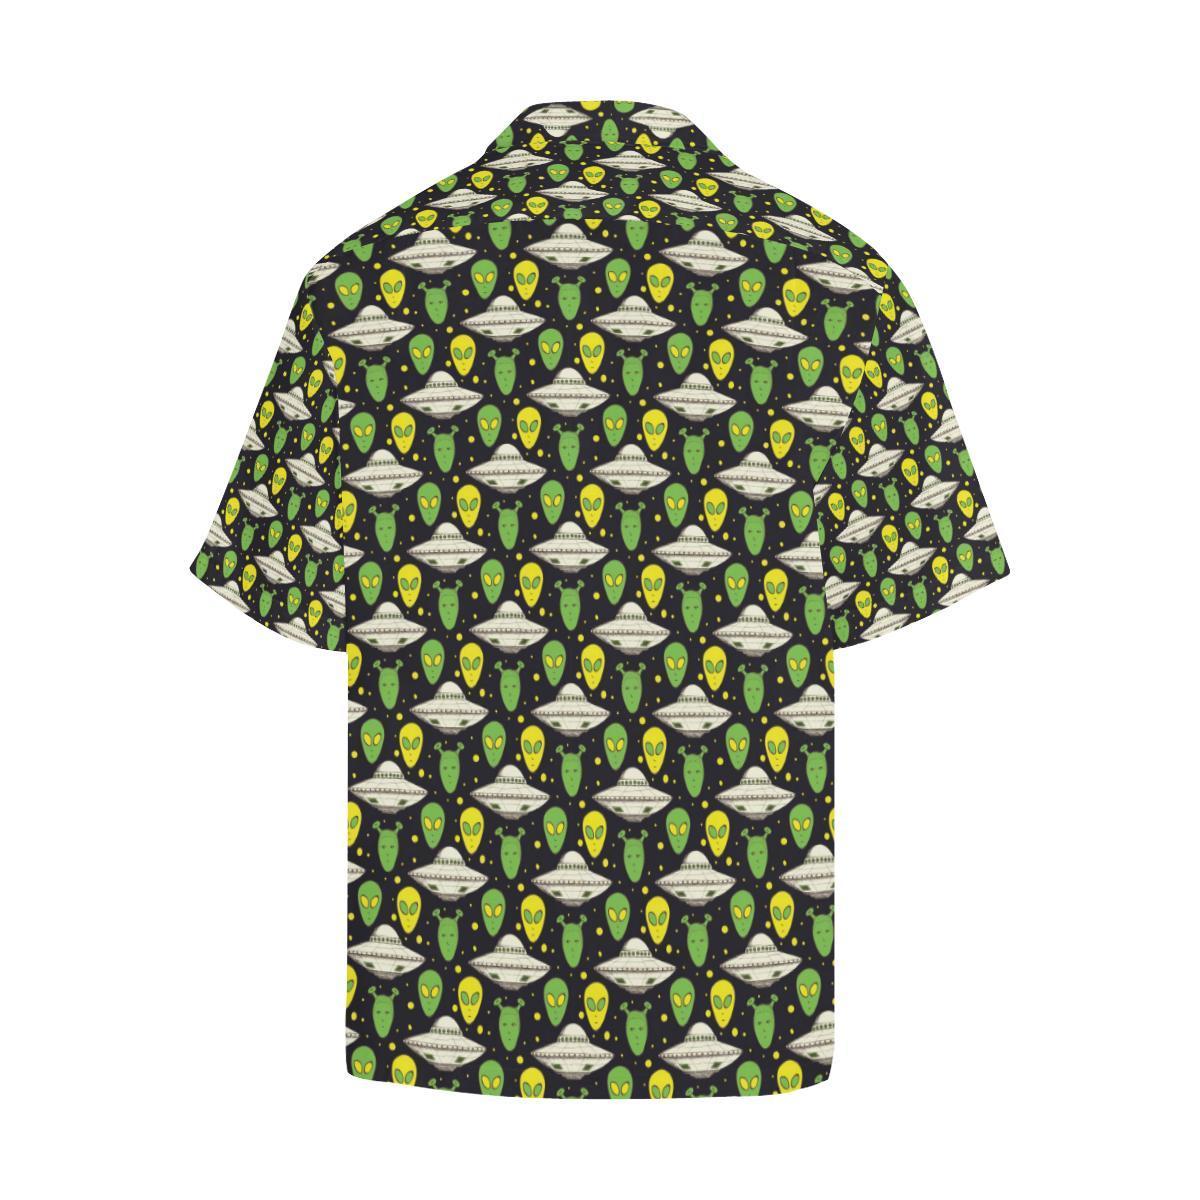 Unifinz UFO Hawaiian Shirt Green Yellow Aliens White UFO Pattern Hawaii Aloha Shirt 2022